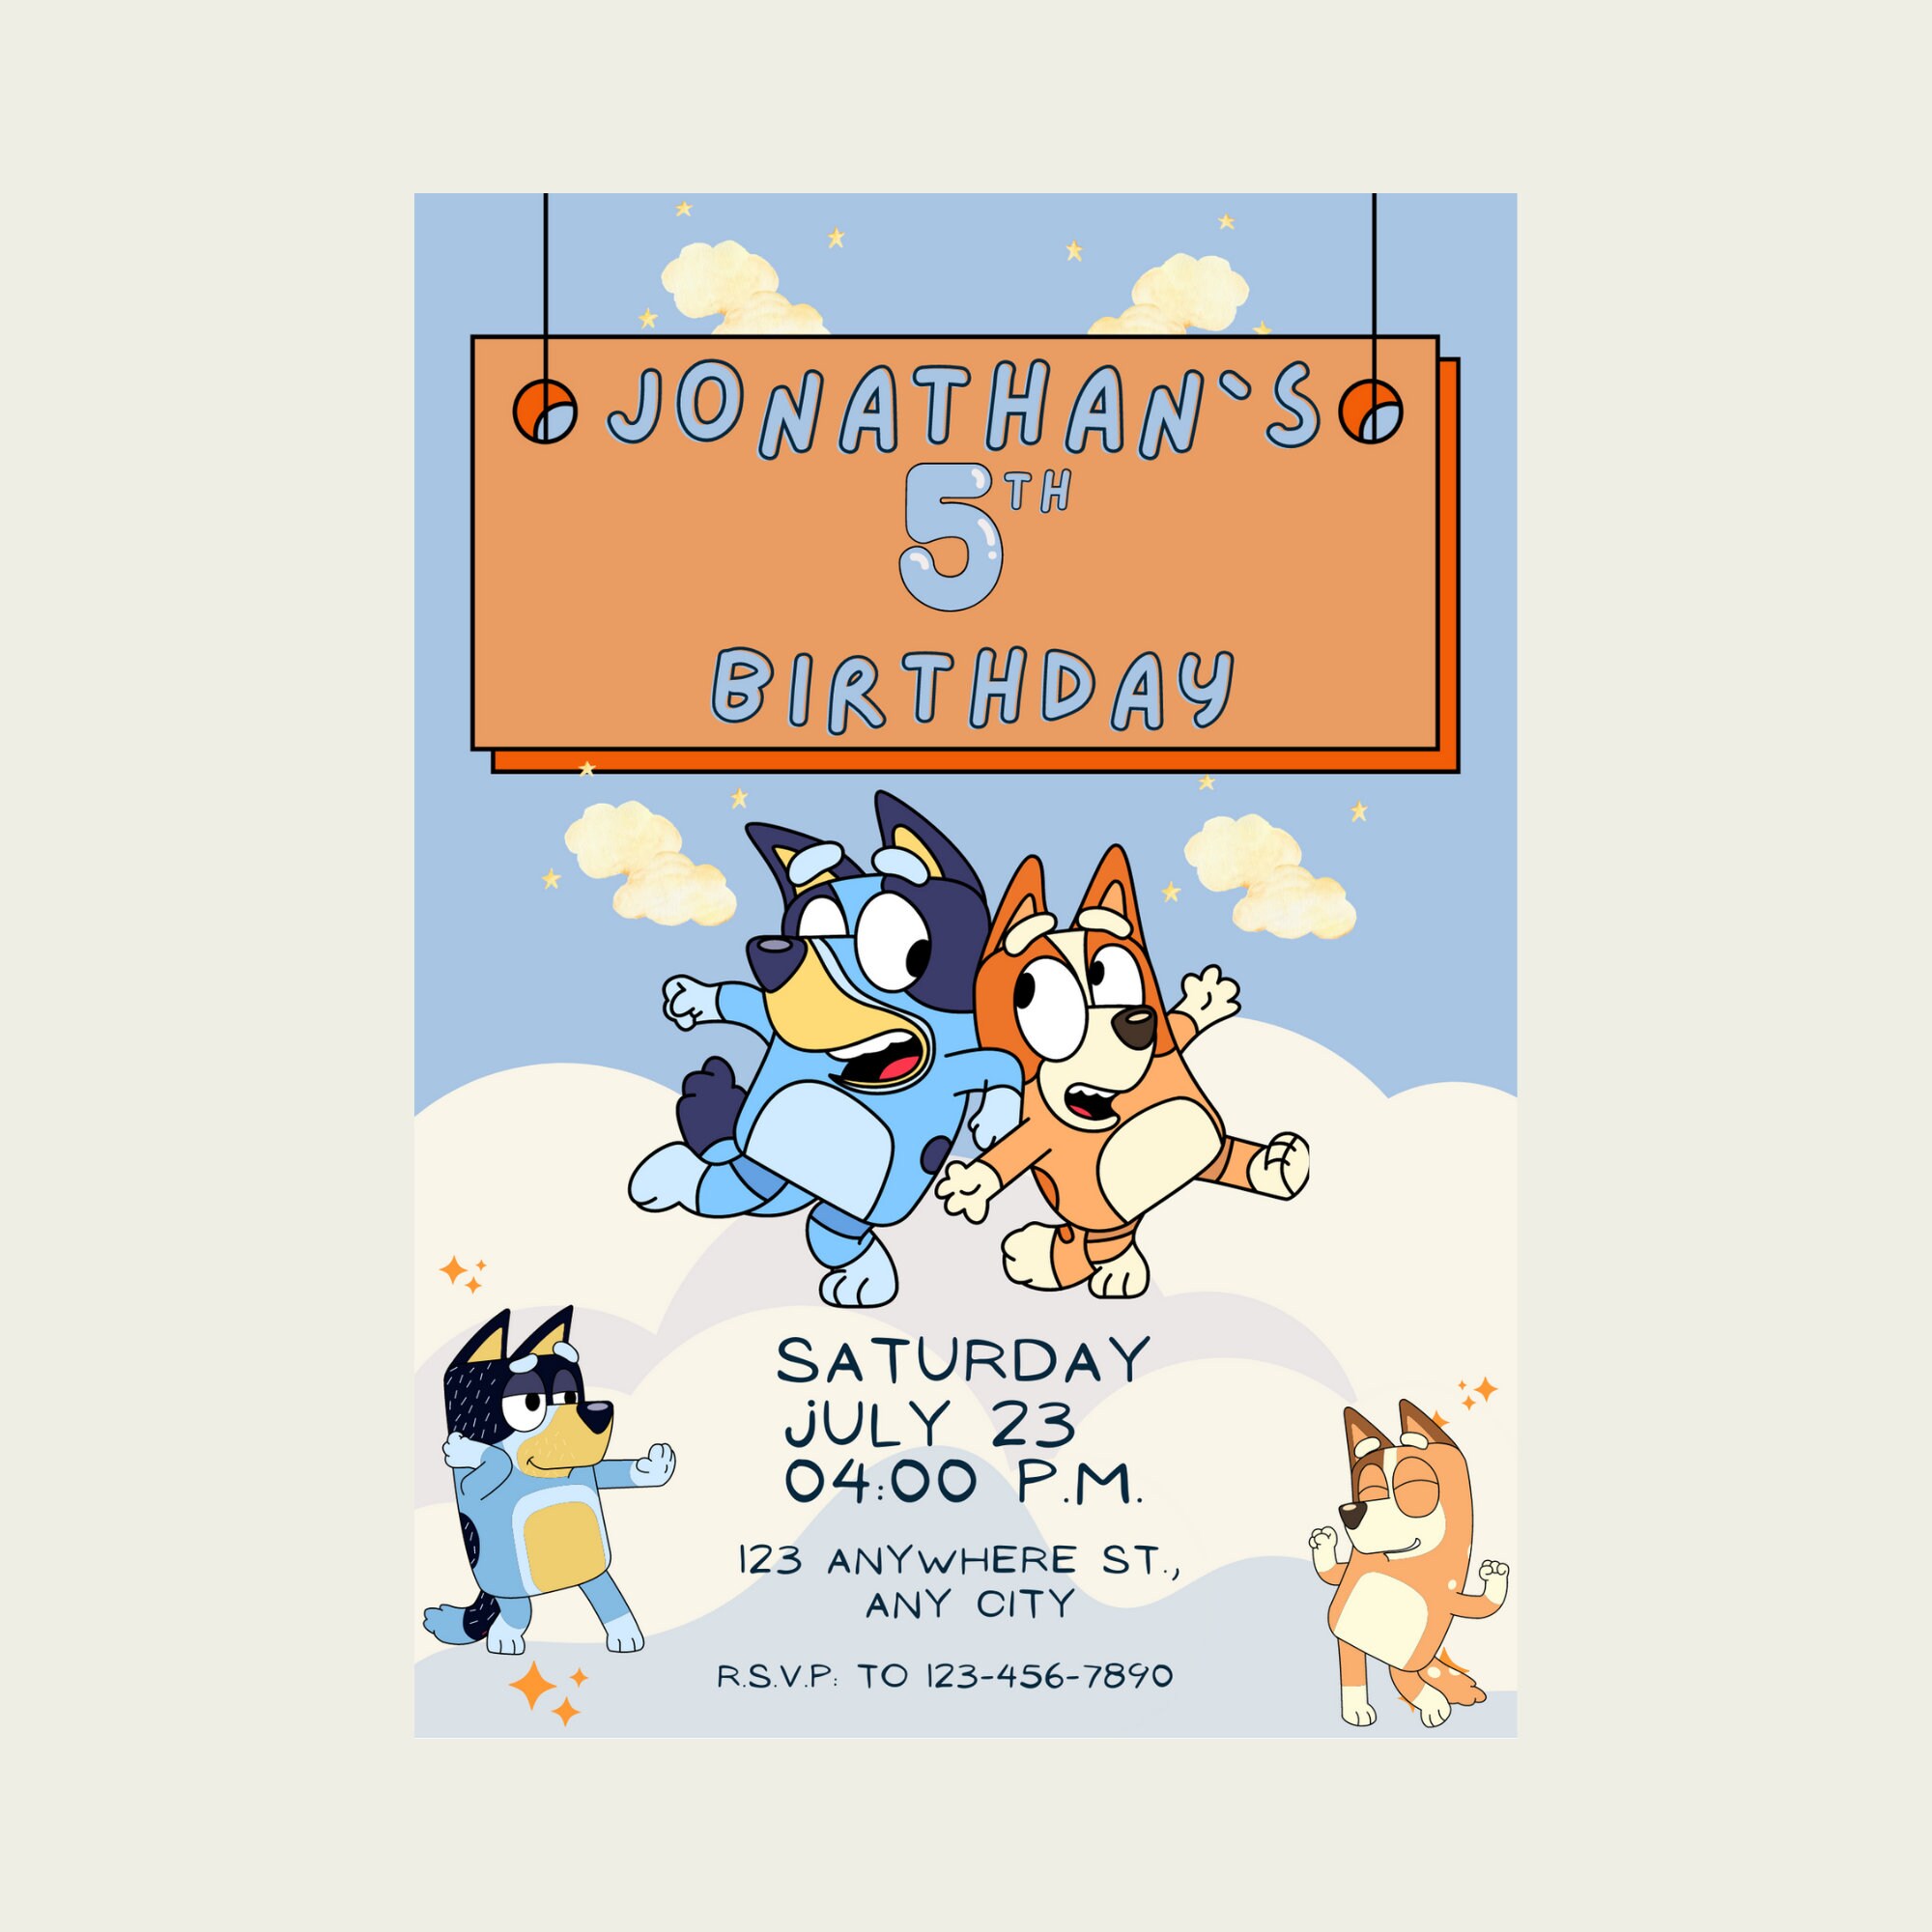 Bluey Birthday Party Invitation 